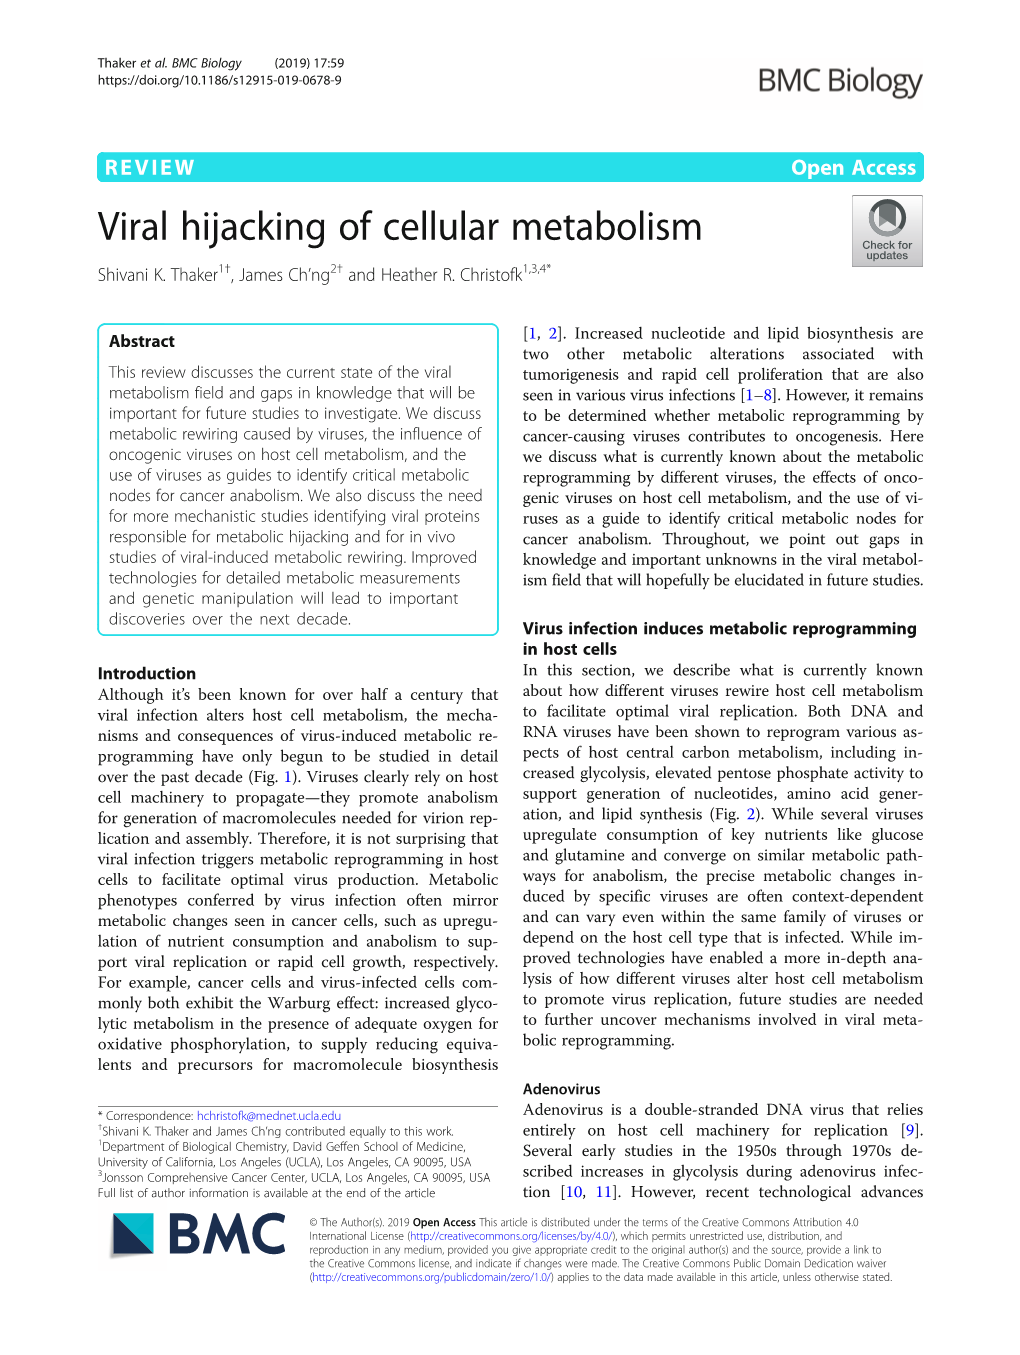 Viral Hijacking of Cellular Metabolism Shivani K